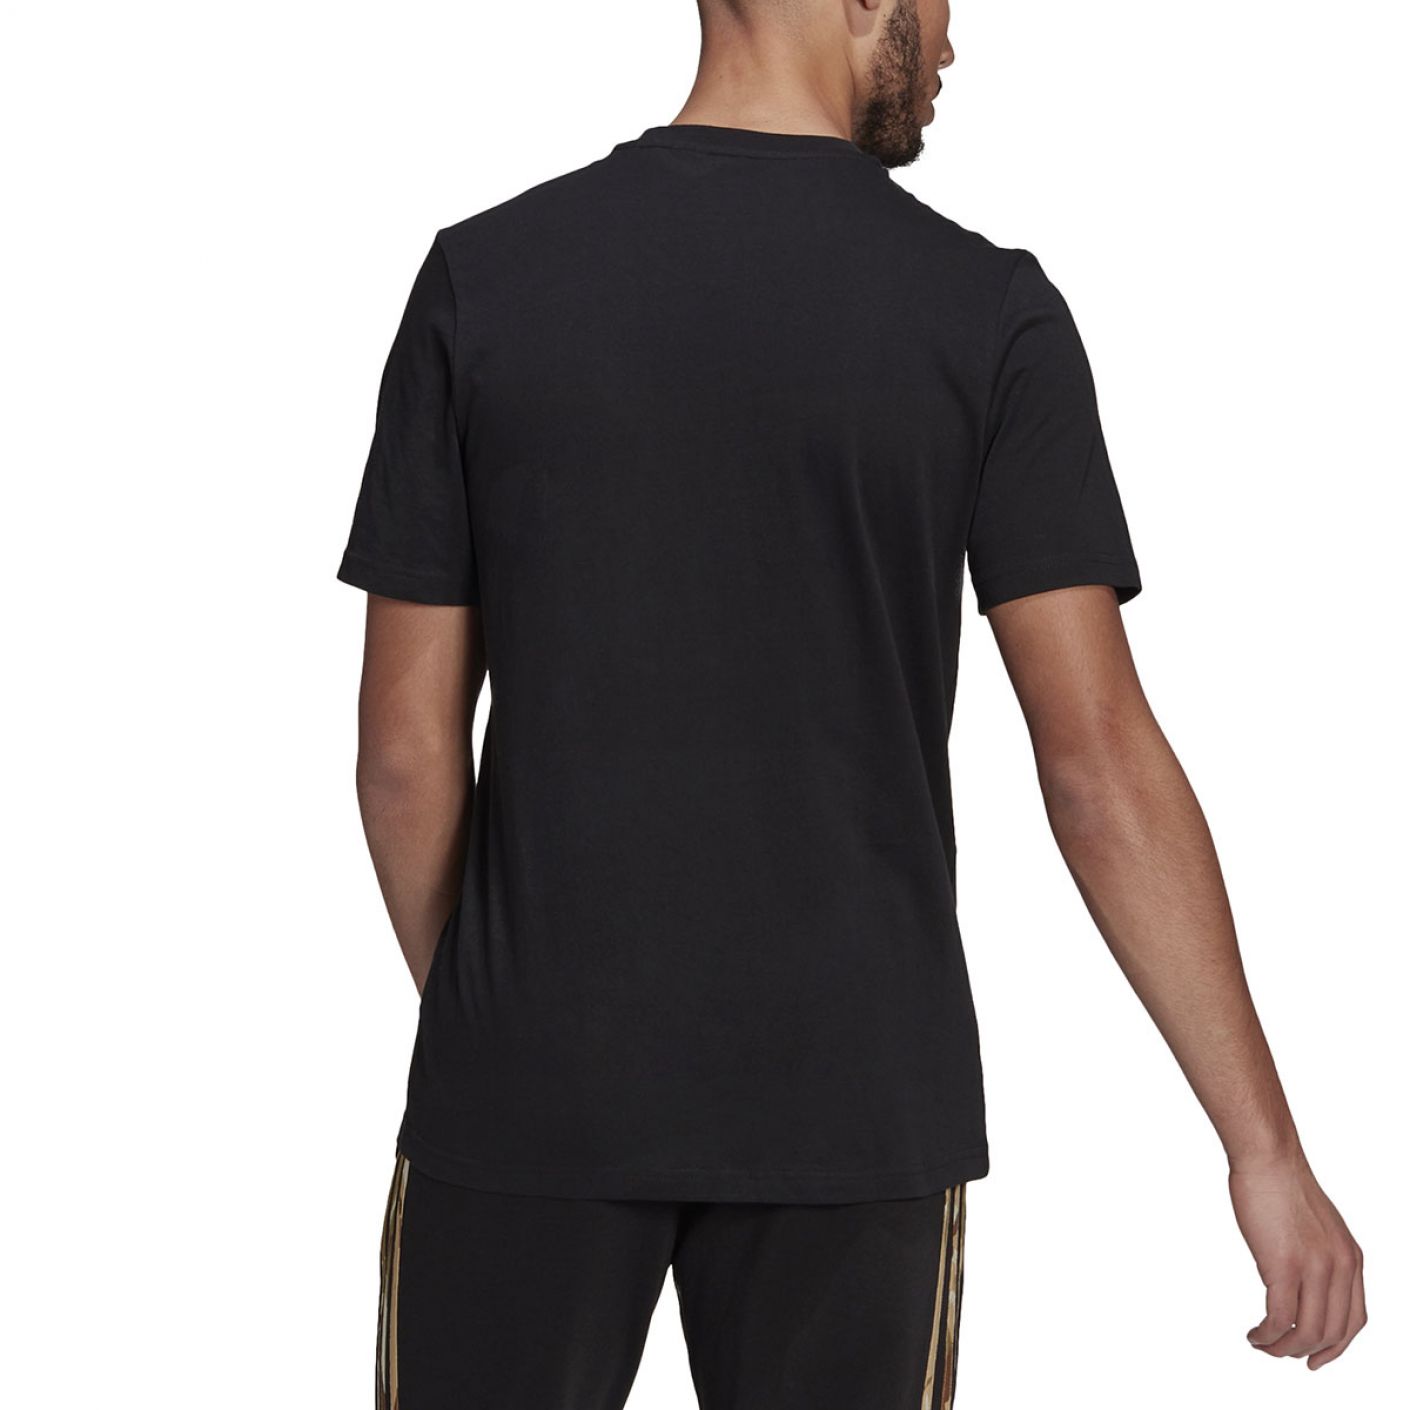 Adidas Essentials Camo Black T-shirt for Men